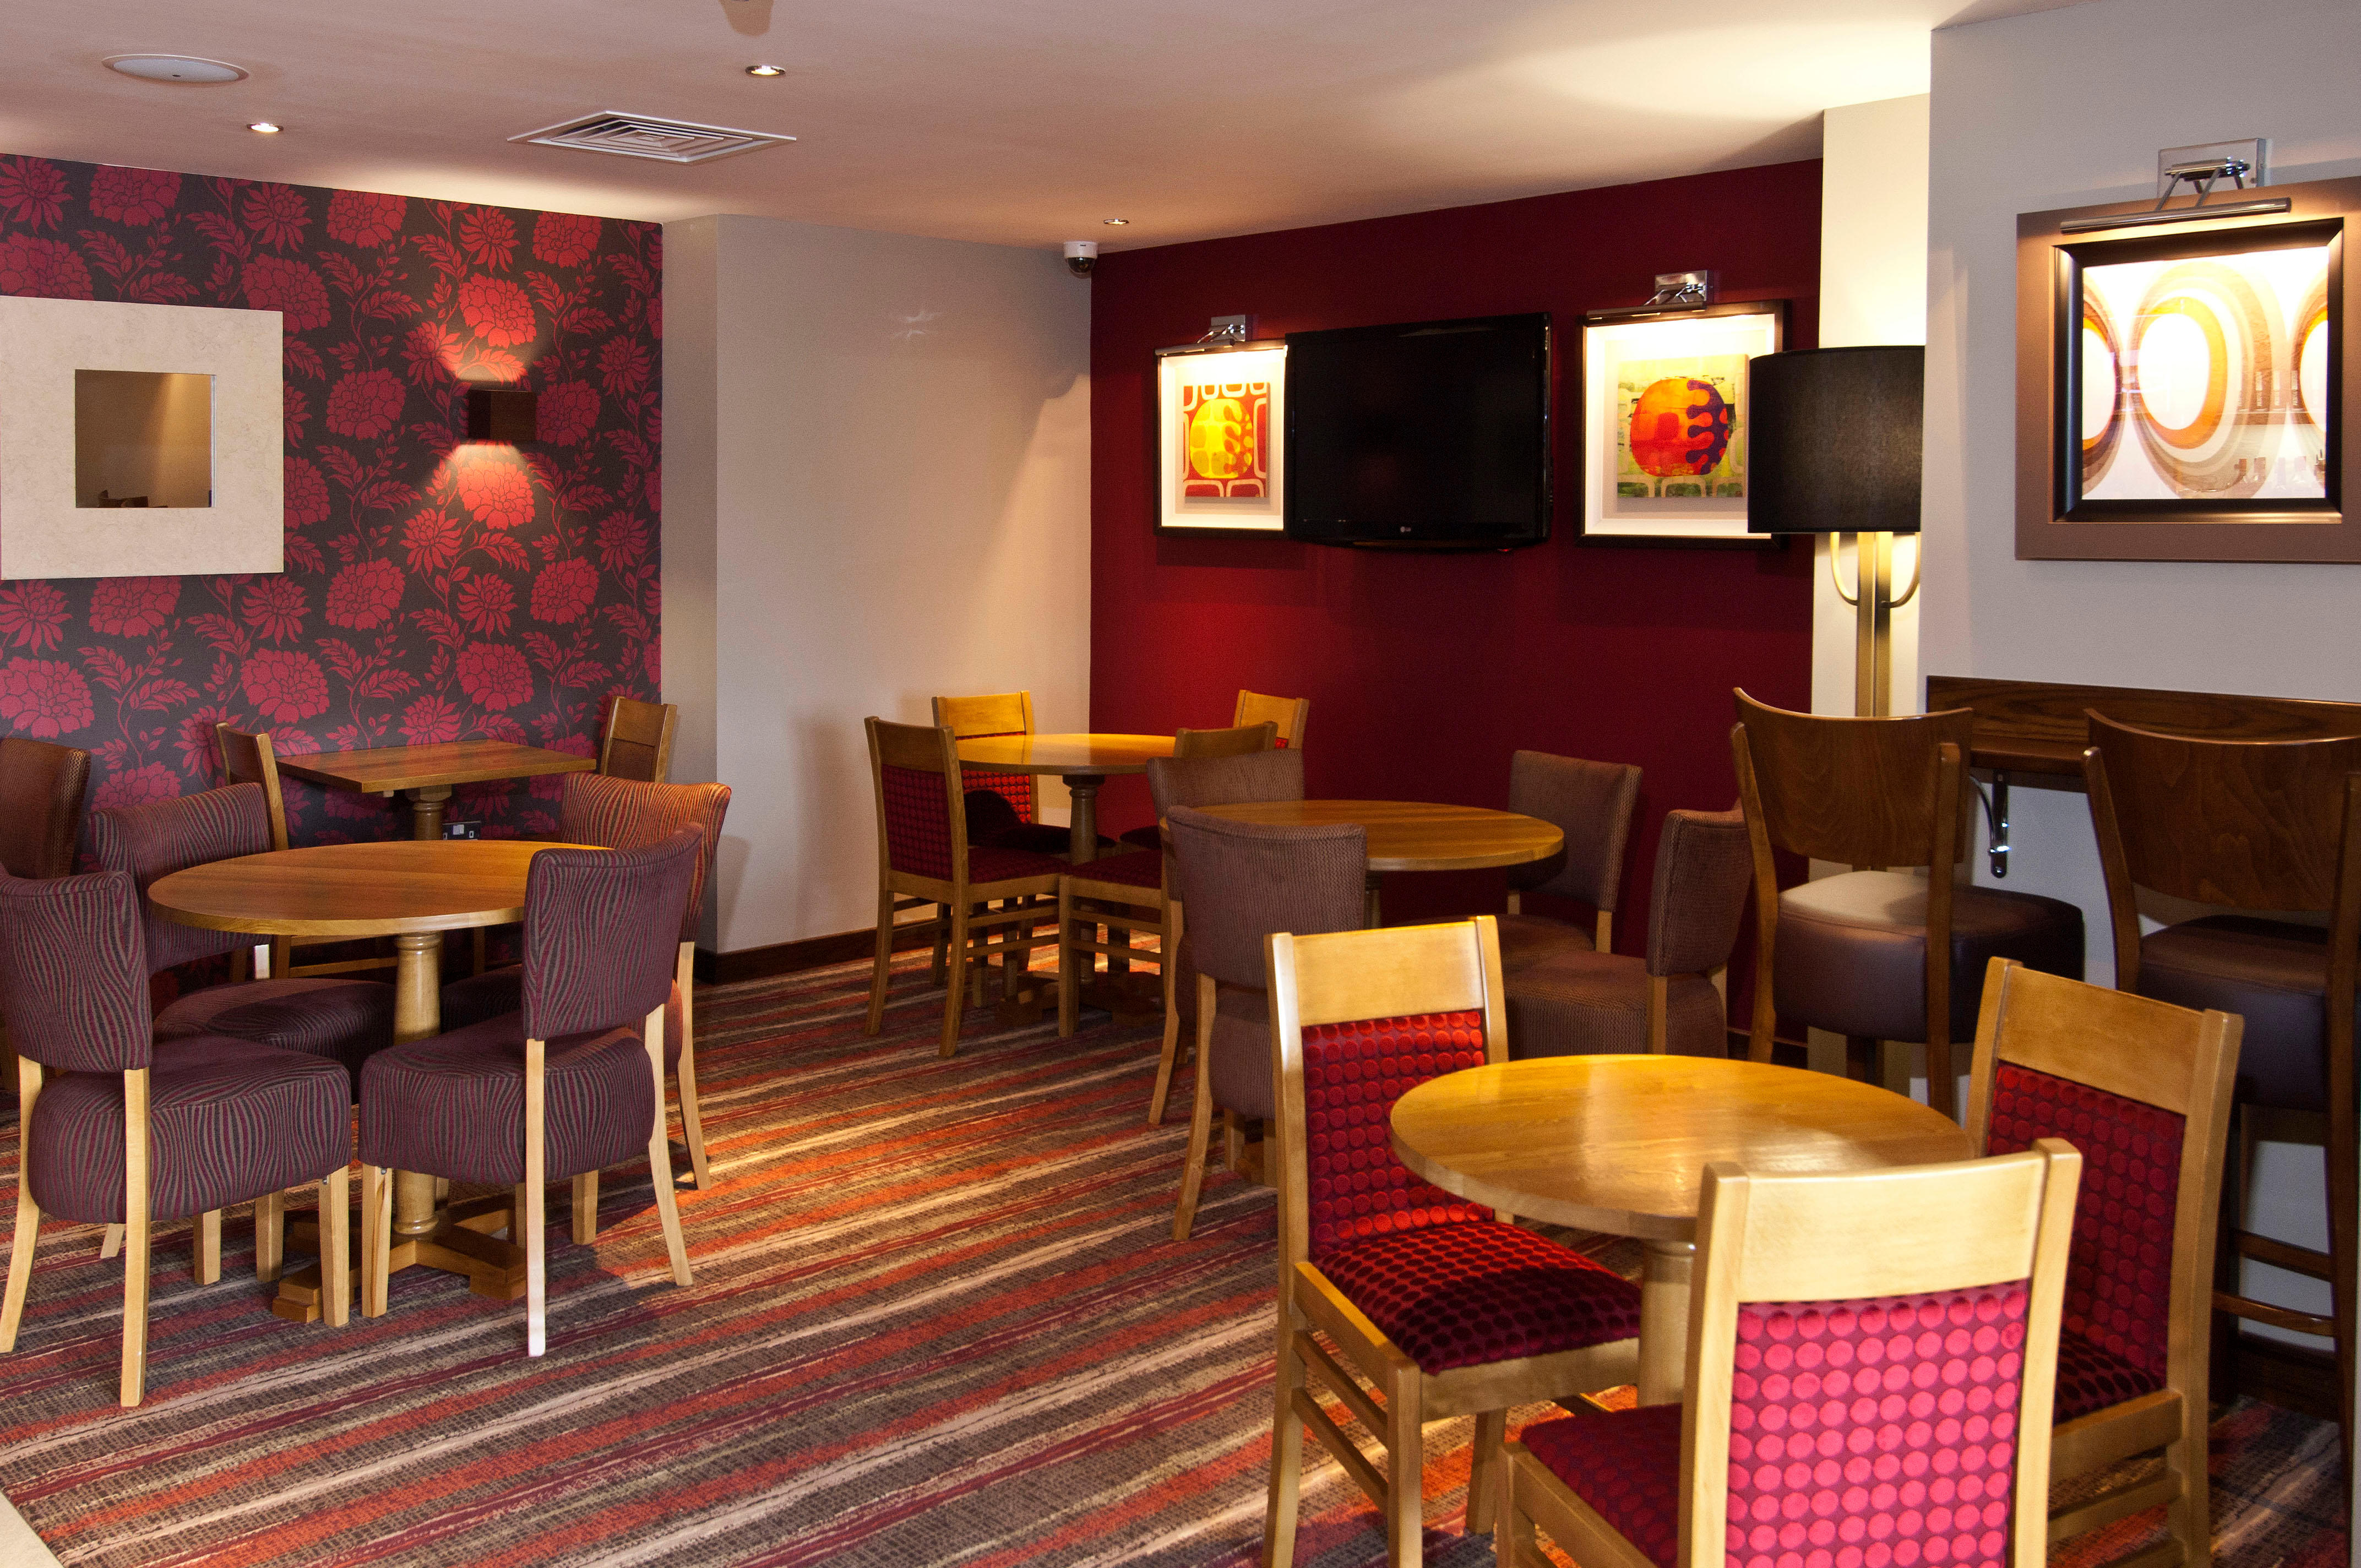 Thyme restaurant Premier Inn London Hanger Lane hotel London 03337 774673